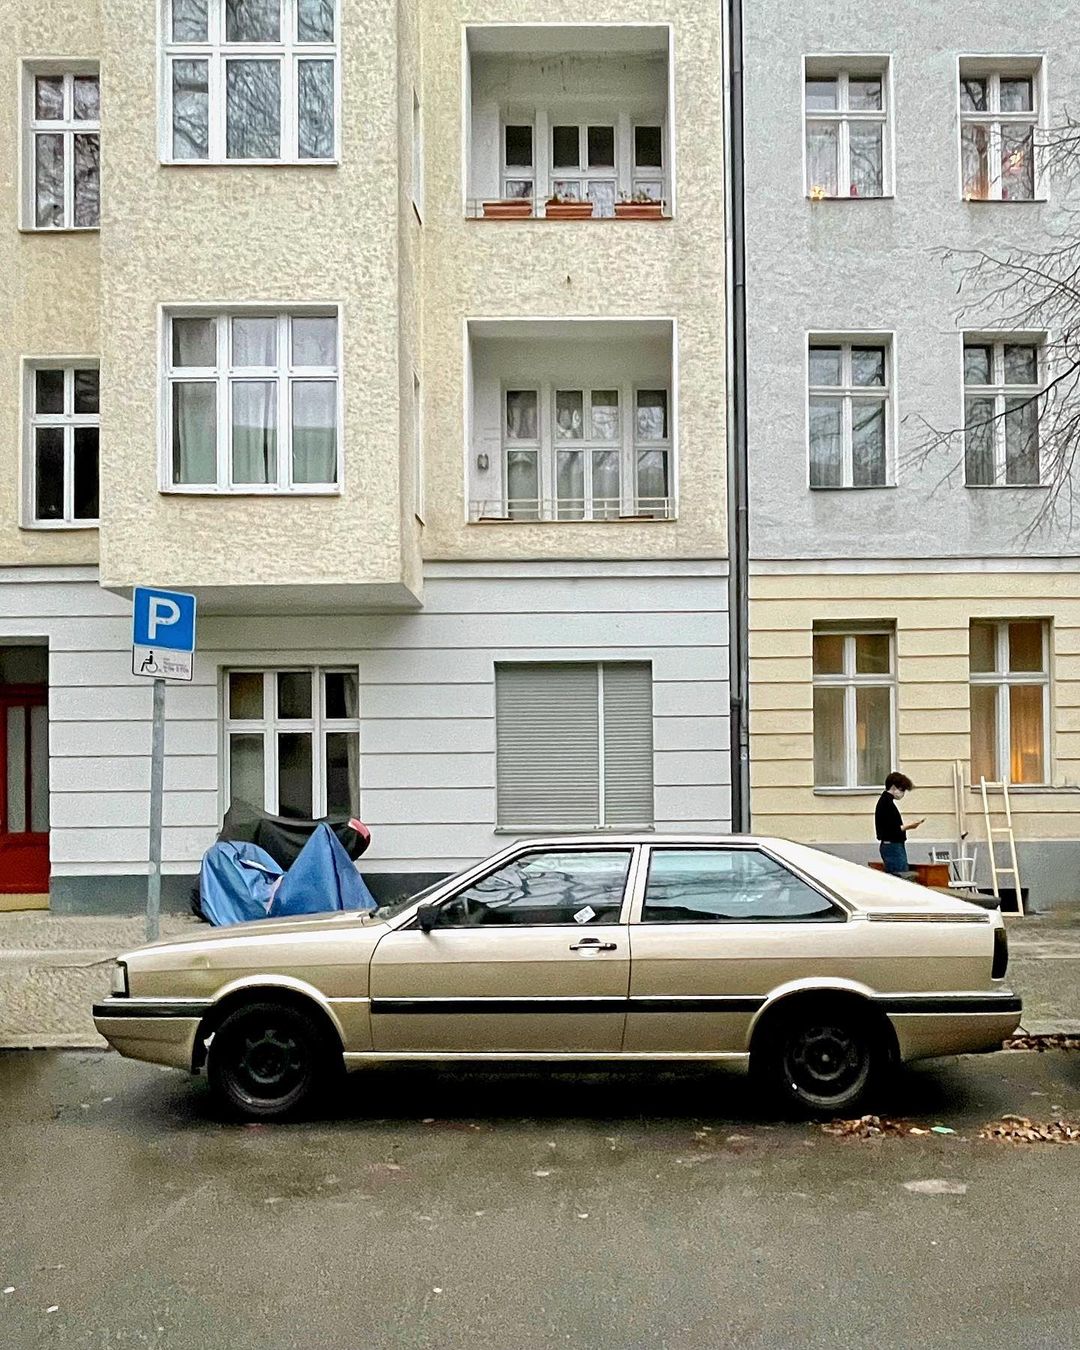 Автомобили немецких городов на снимках Грегора Клара